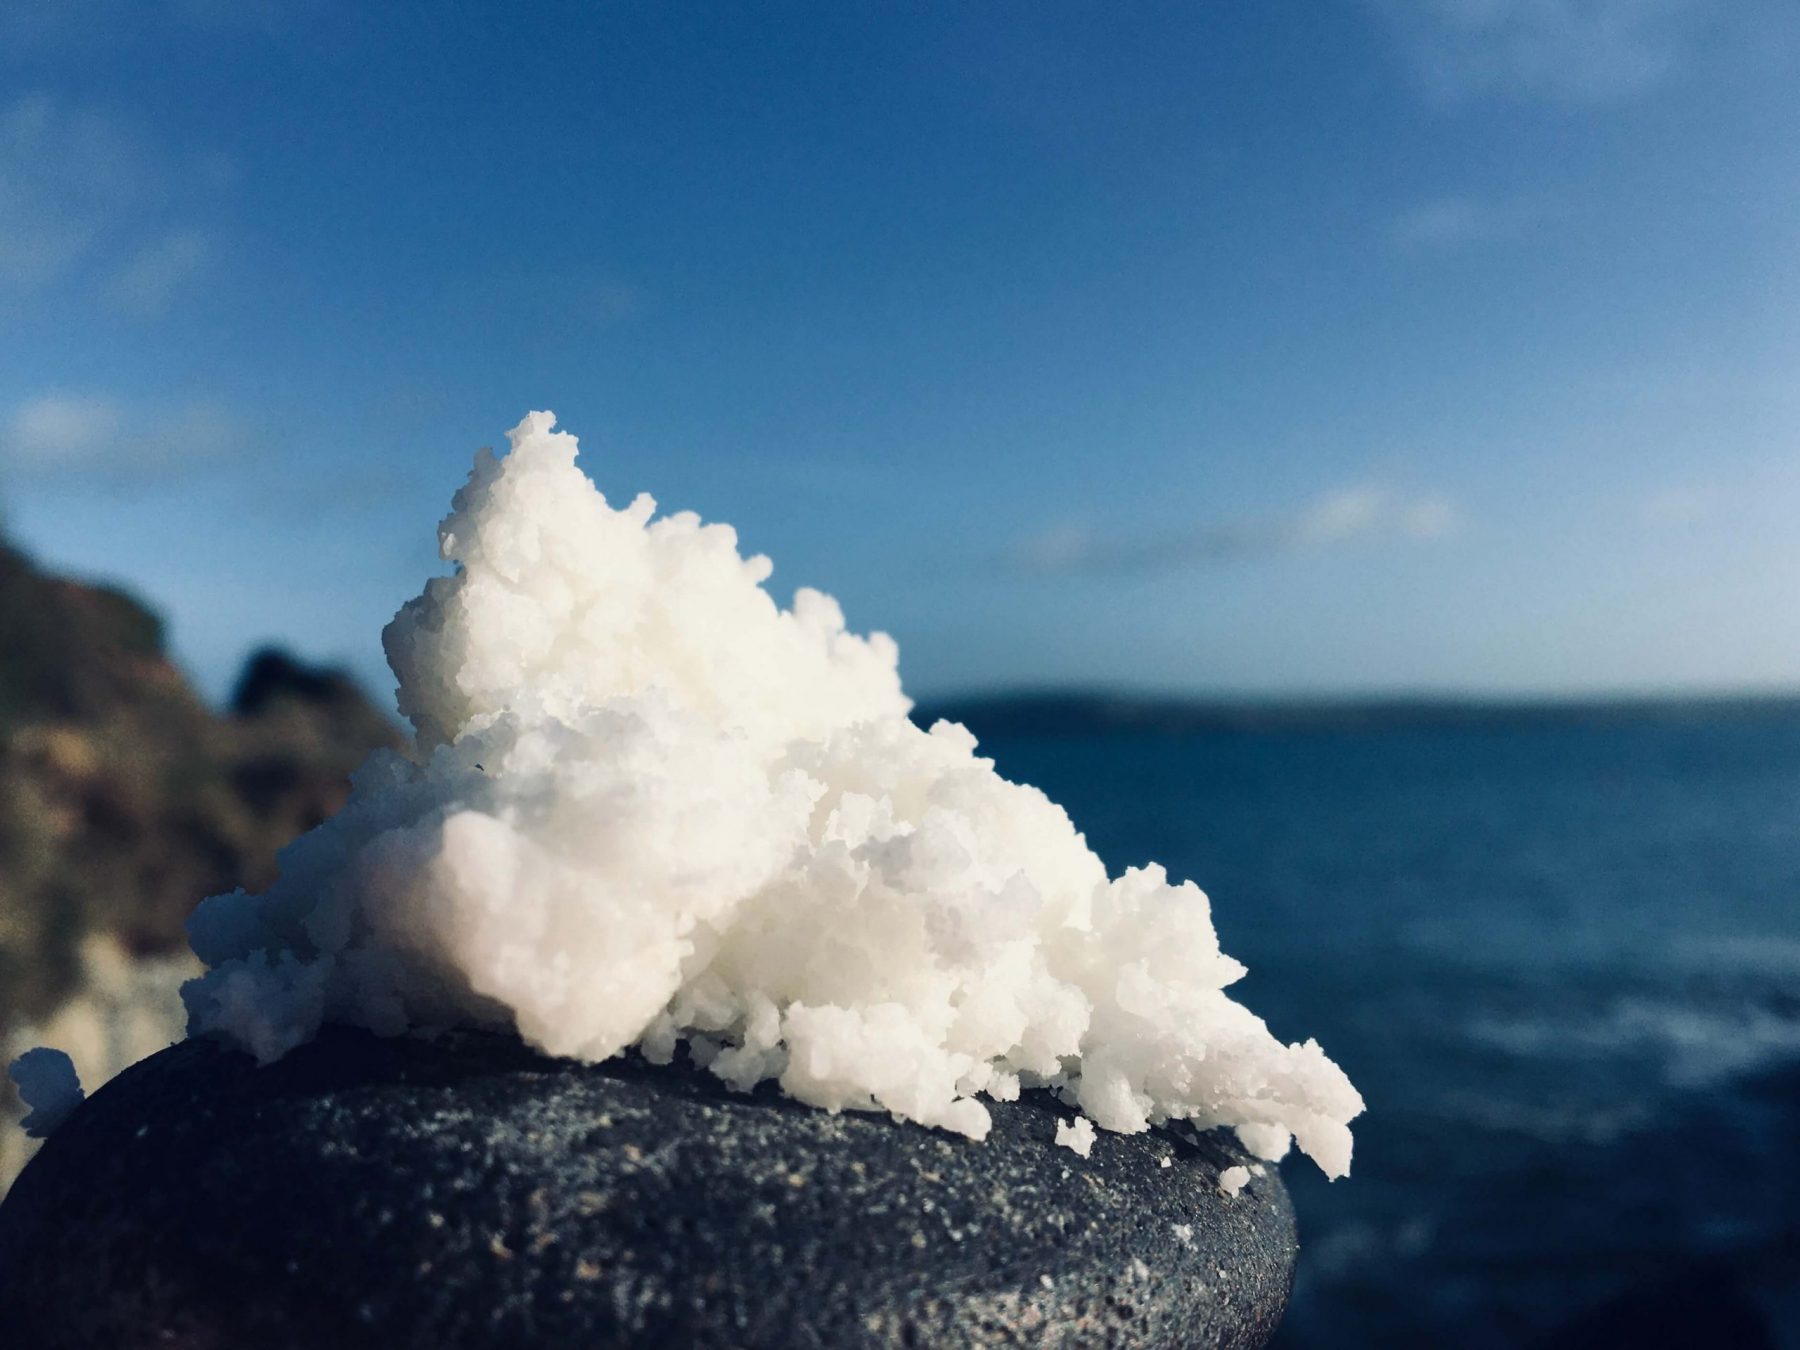 Θάλασσα Αλάτι Ομορφιά: Σπιτικό scrub απολέπισης με θαλασσινό αλάτι για βαθύ καθαρισμό και θρέψη [vid]